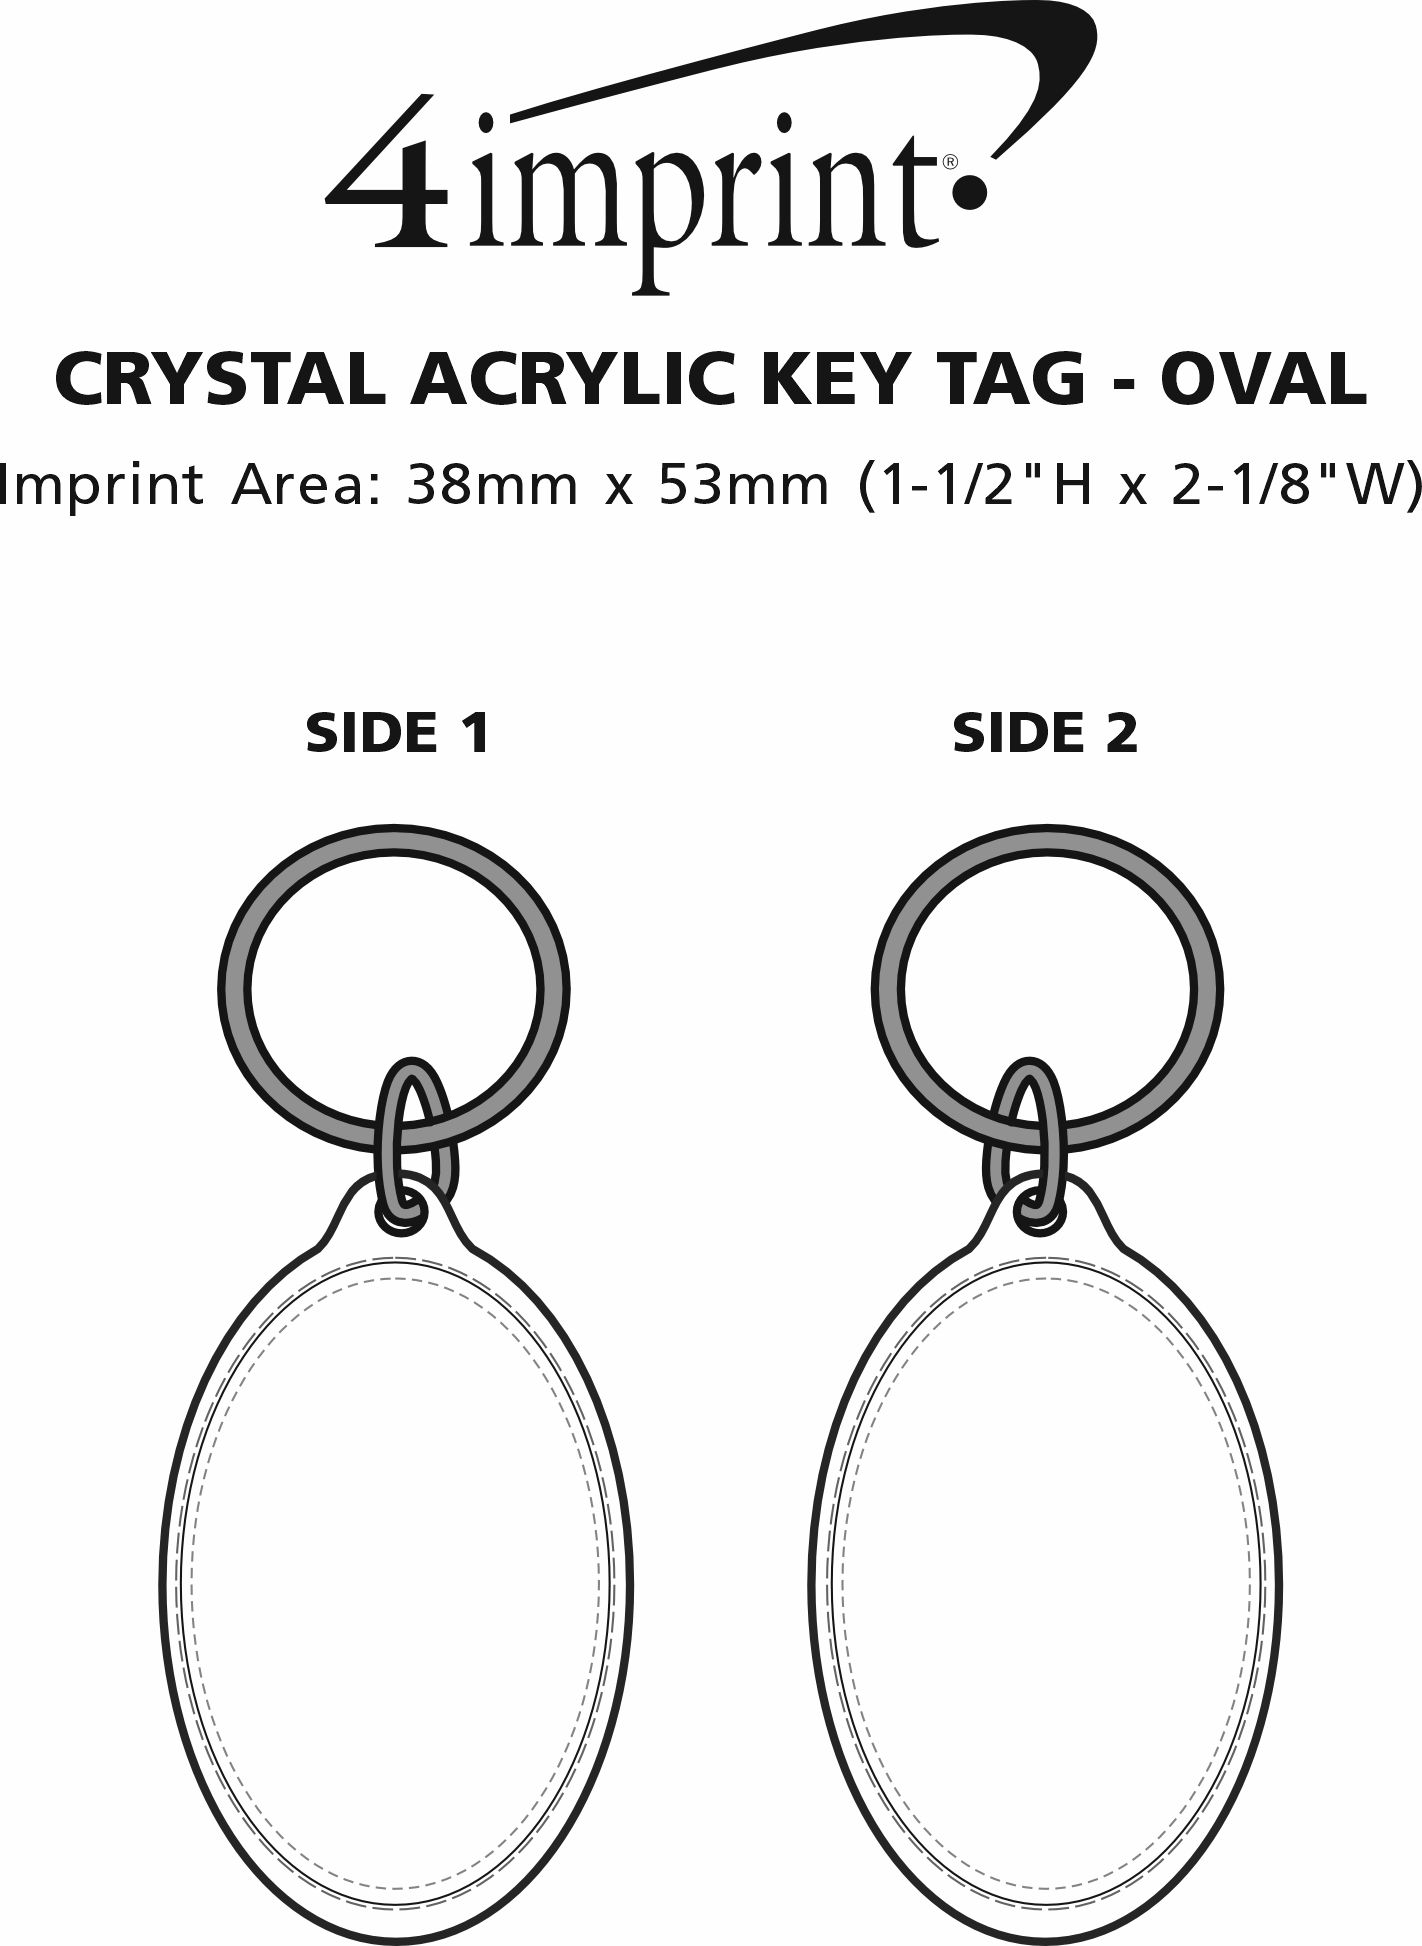 Imprint Area of Crystal Acrylic Keychain - Oval